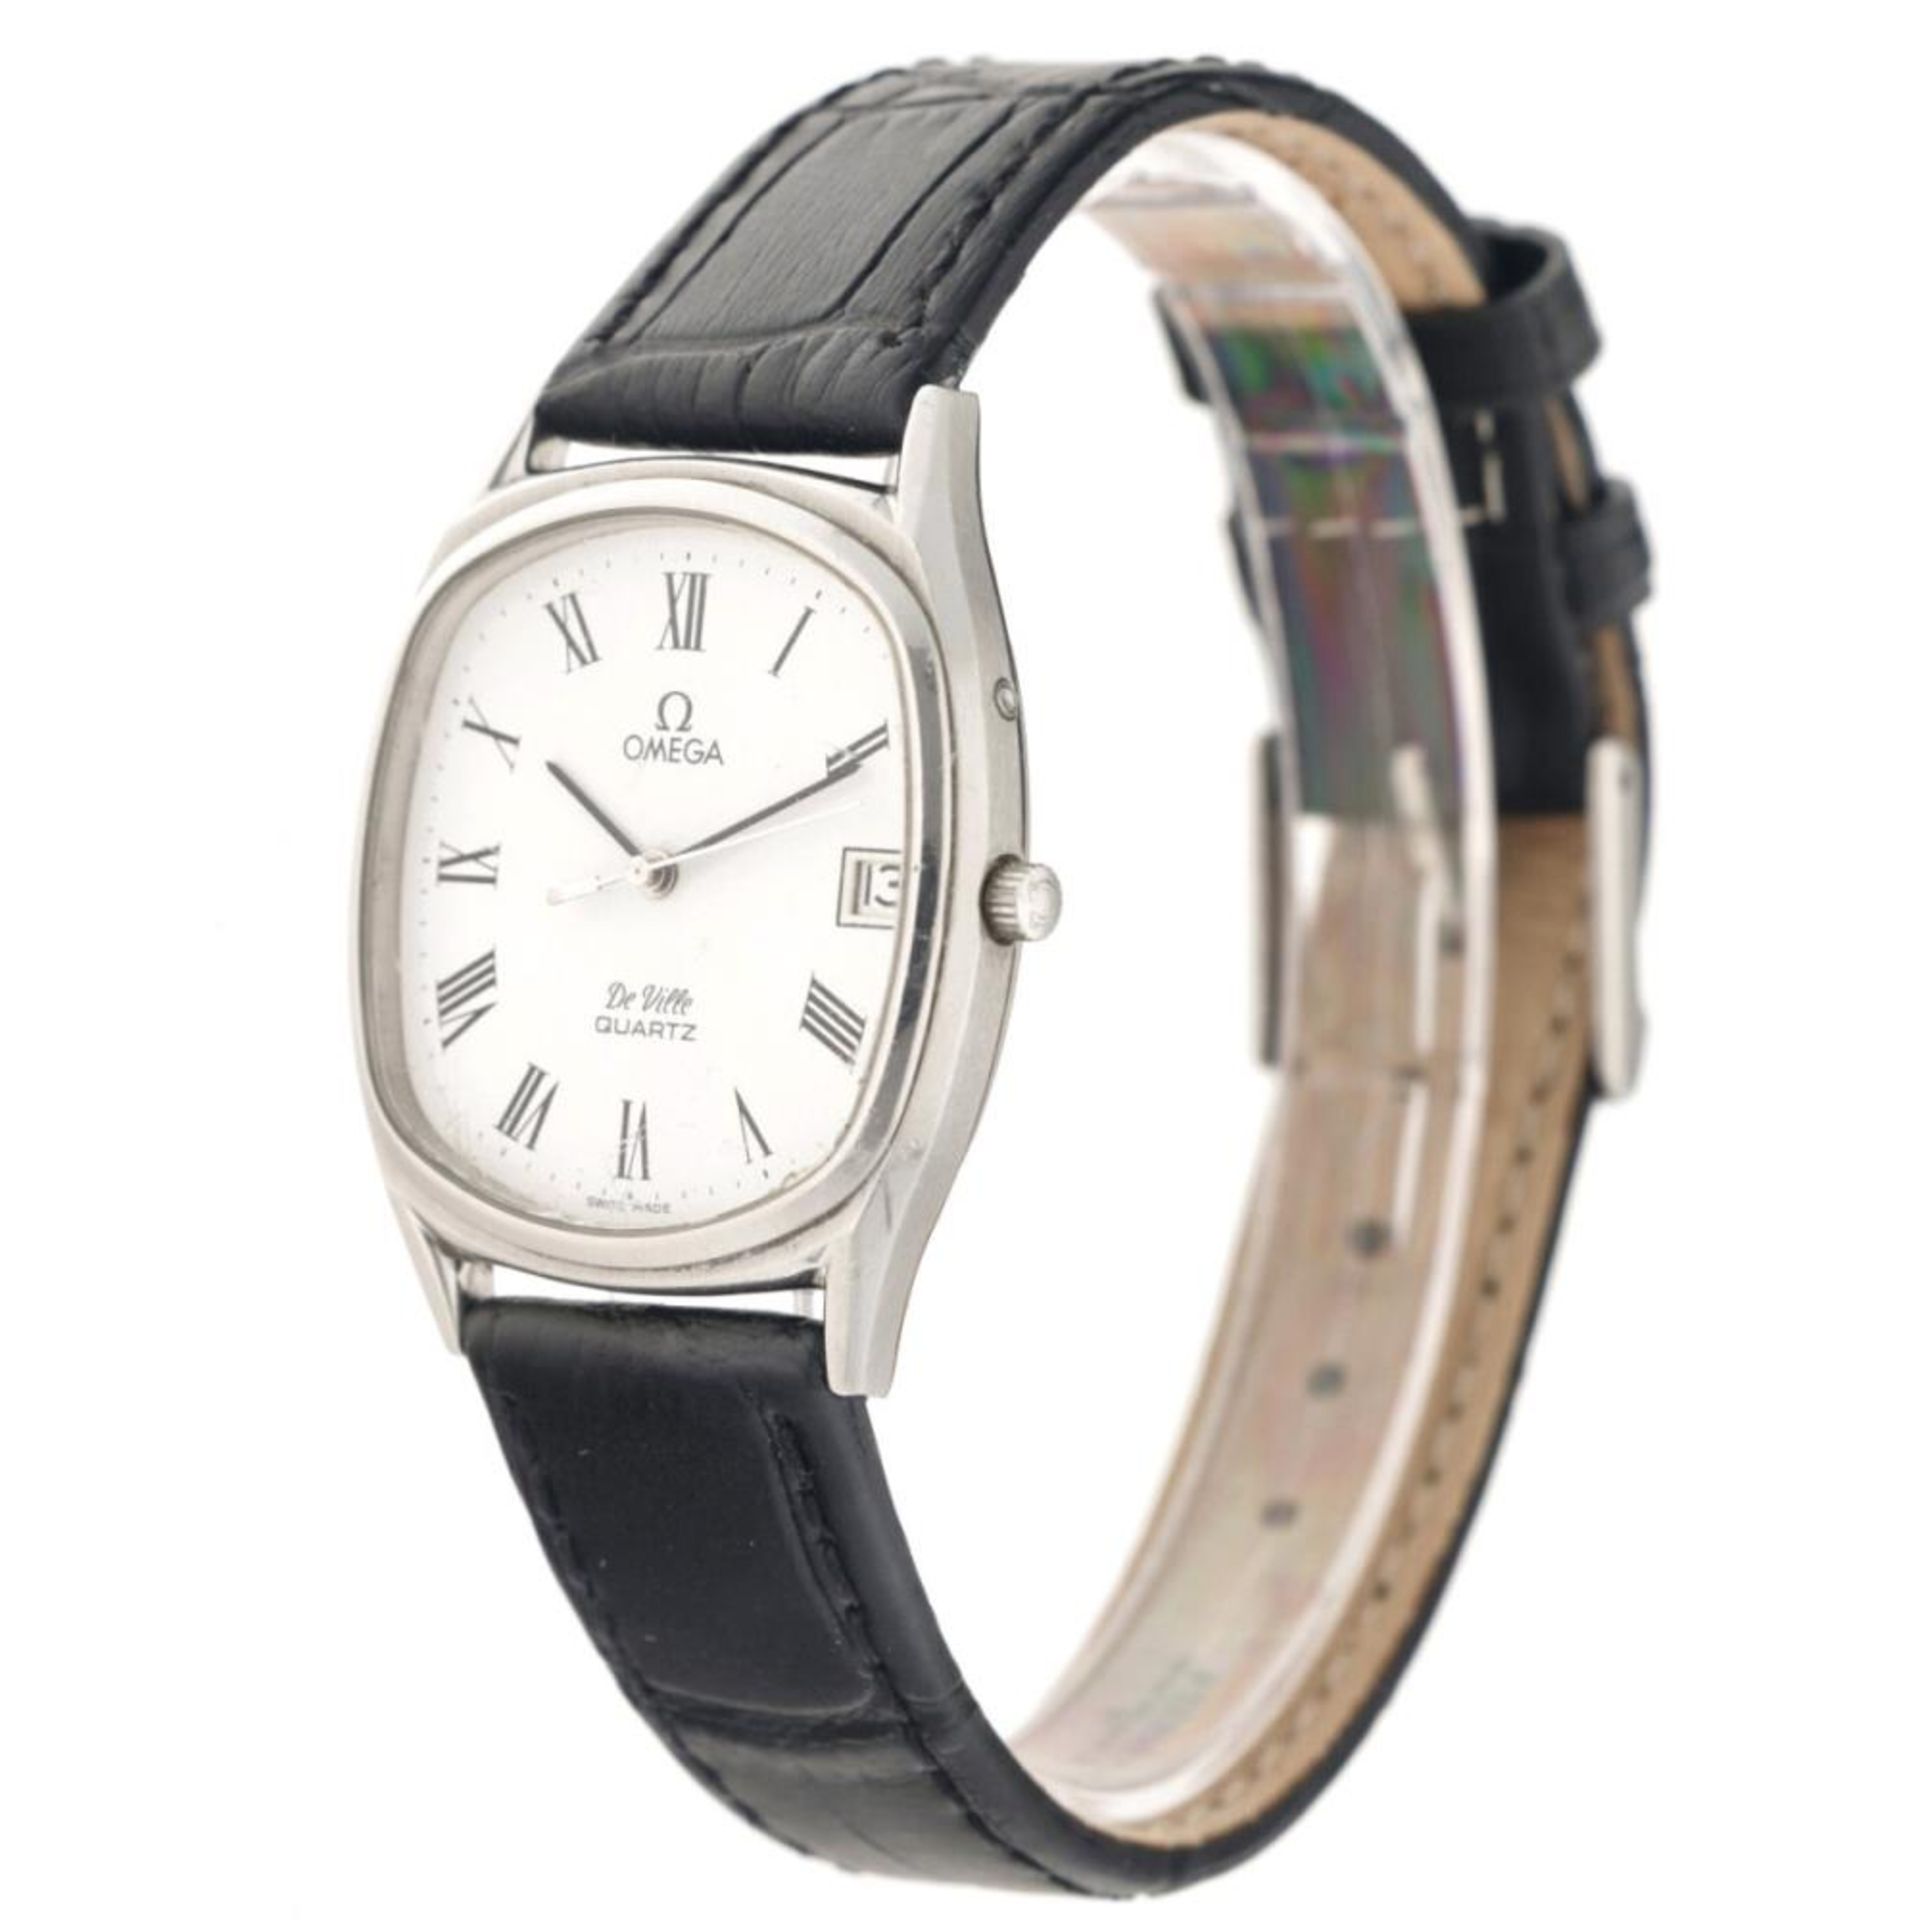 Omega de Ville 1920050 - Men's watch - approx. 1980. - Bild 2 aus 5